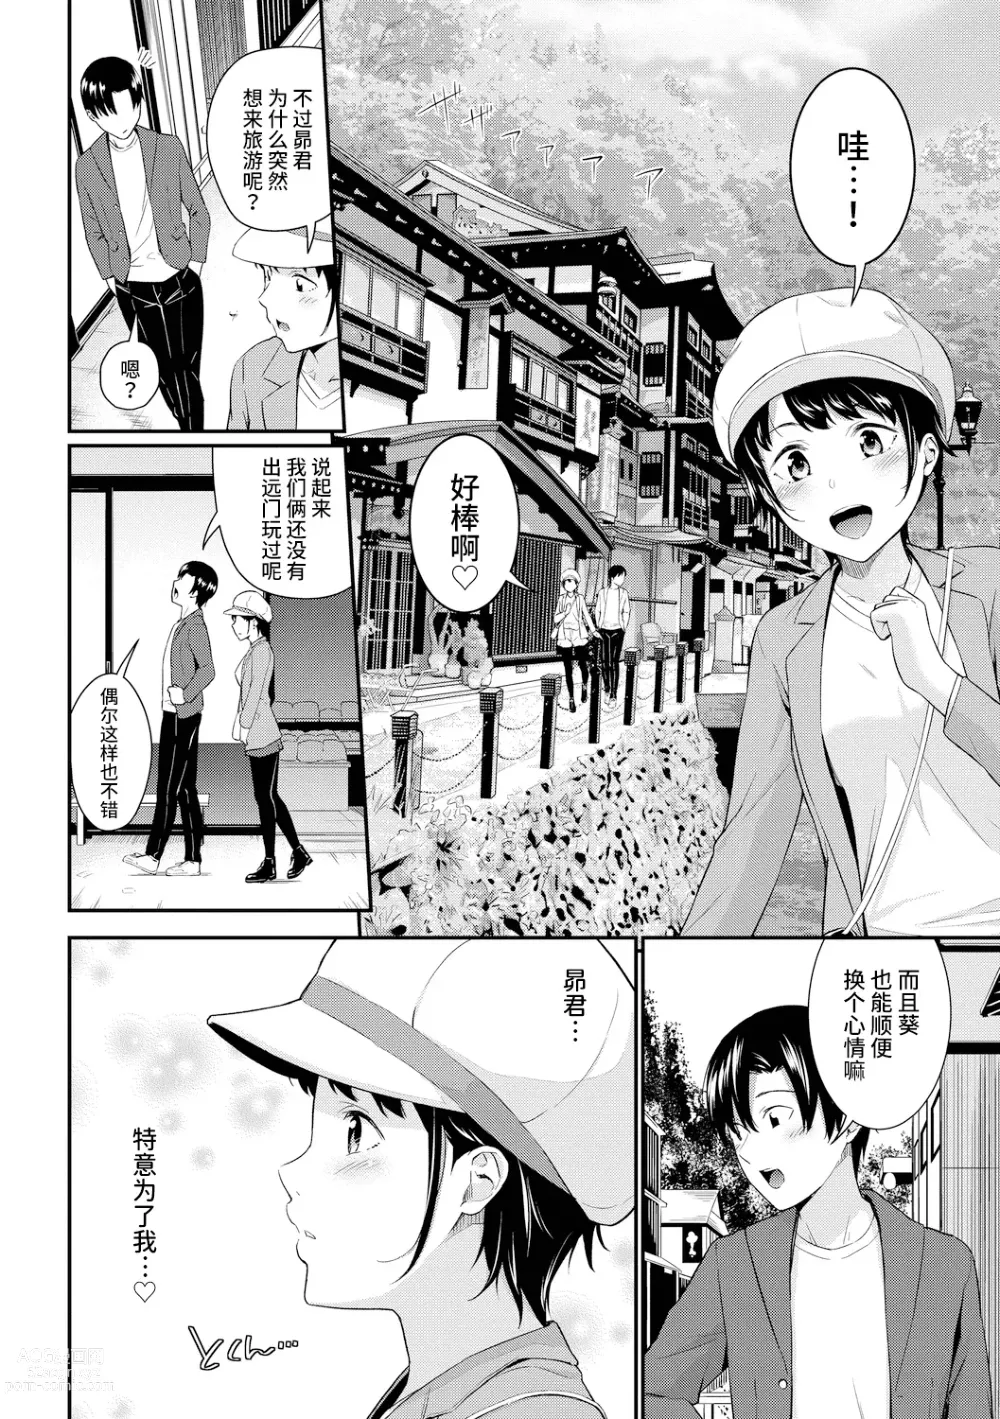 Page 5 of manga シャイミートリップ+続・シャイミートリップ